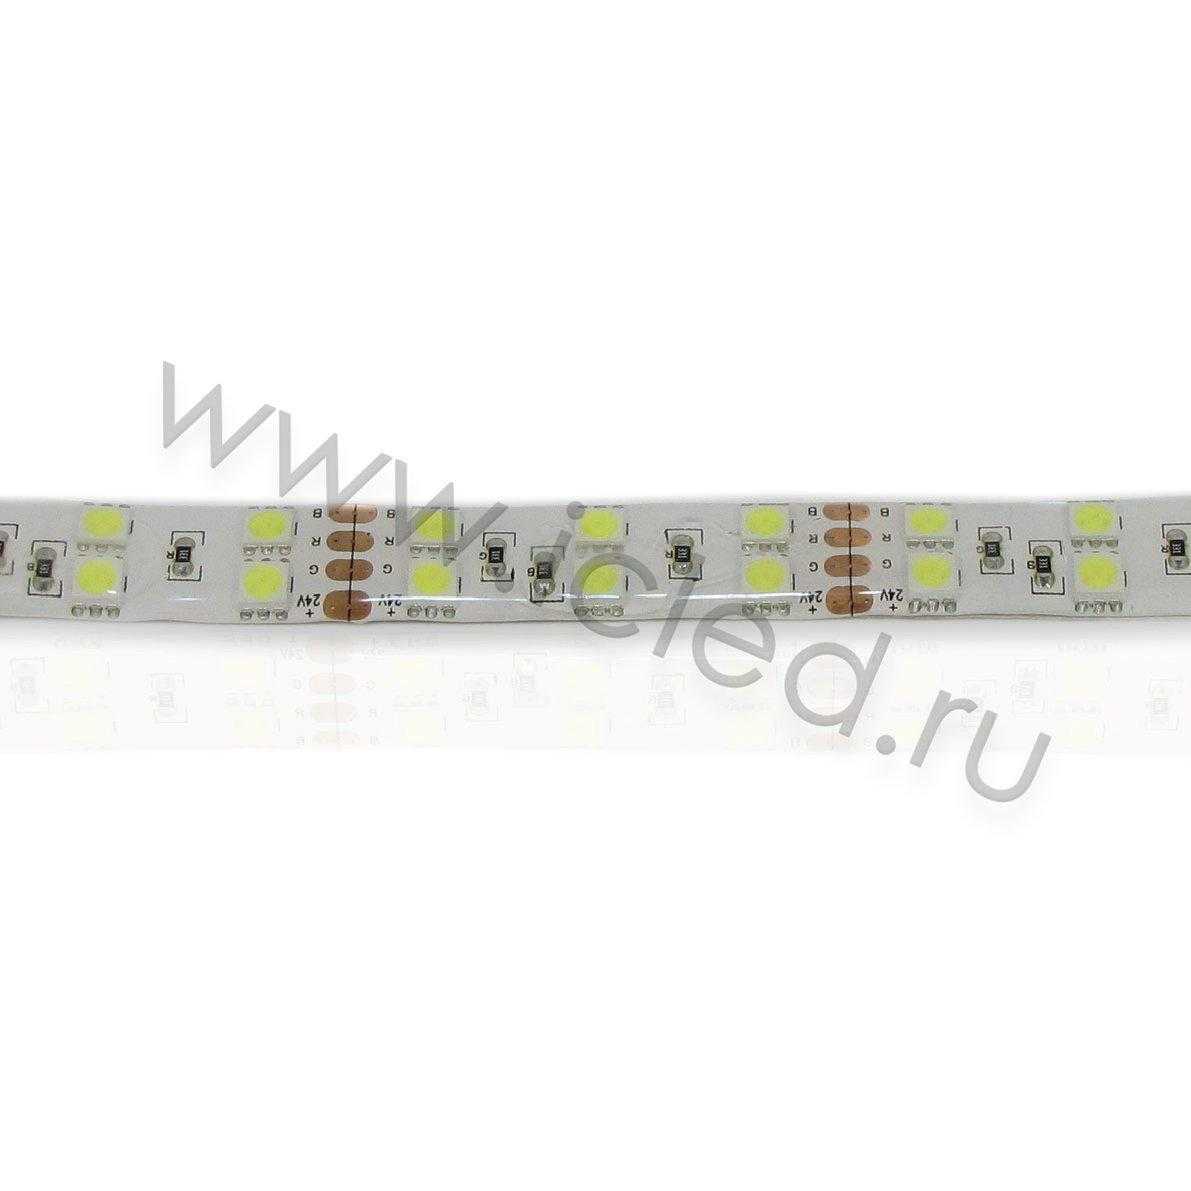 Влагозащищенные светодиодные ленты Светодиодная лента Standart PRO class, 5050, 120 led/m, White, 24V, IP65 Icled